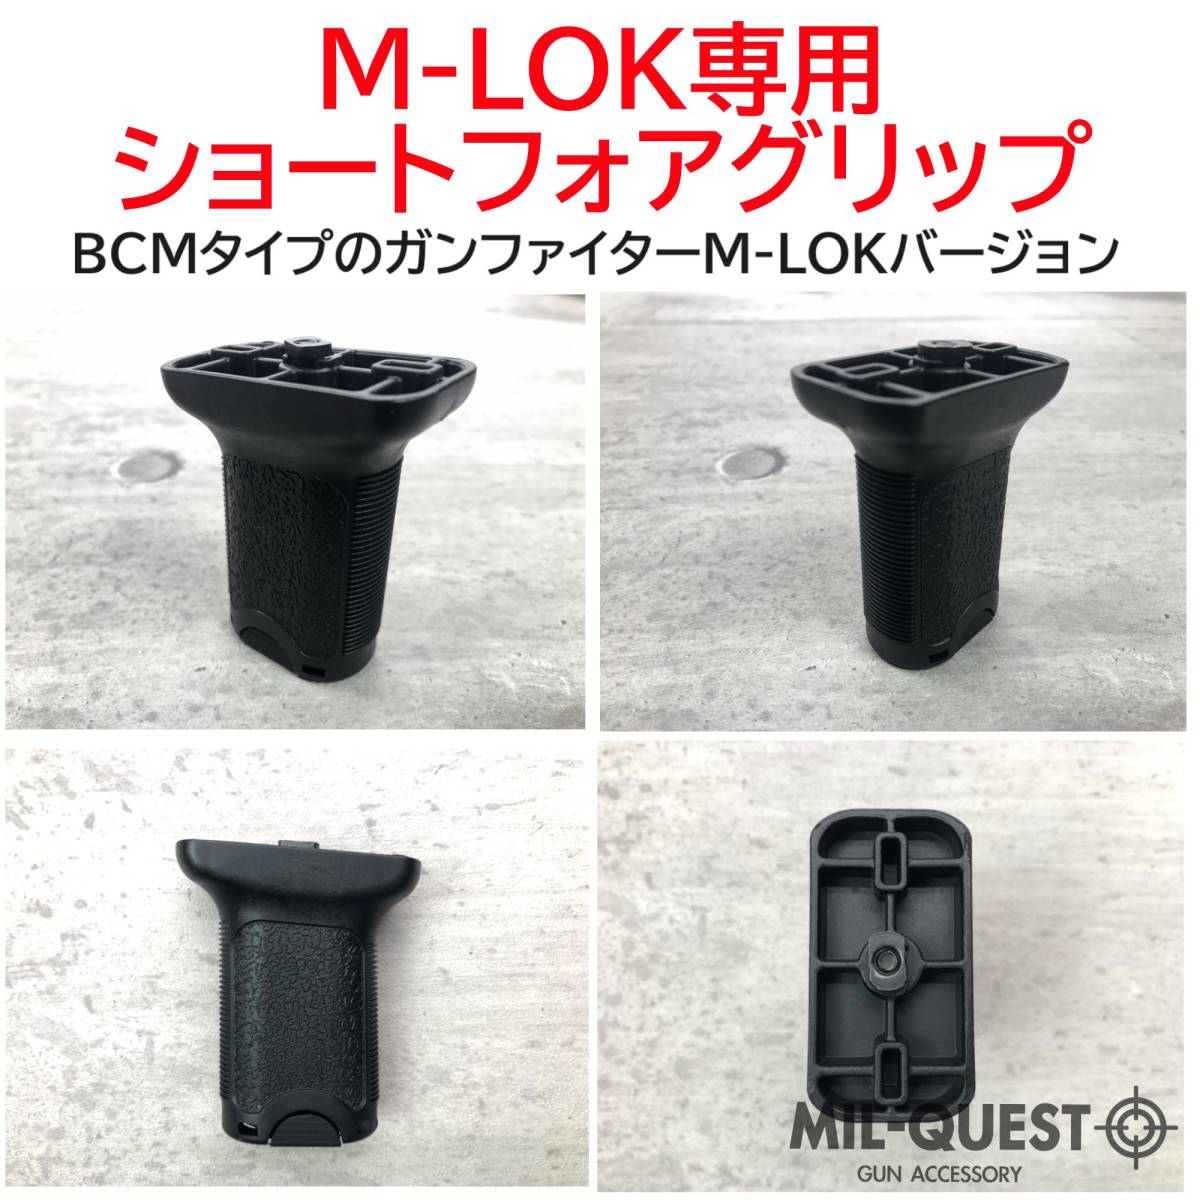 バーティカルグリップ ショート フォアグリップ M-LOK専用 ブラック MILQUEST ミルクエスト BCMタイプ Mロック エムロック エアガン FMAの画像2